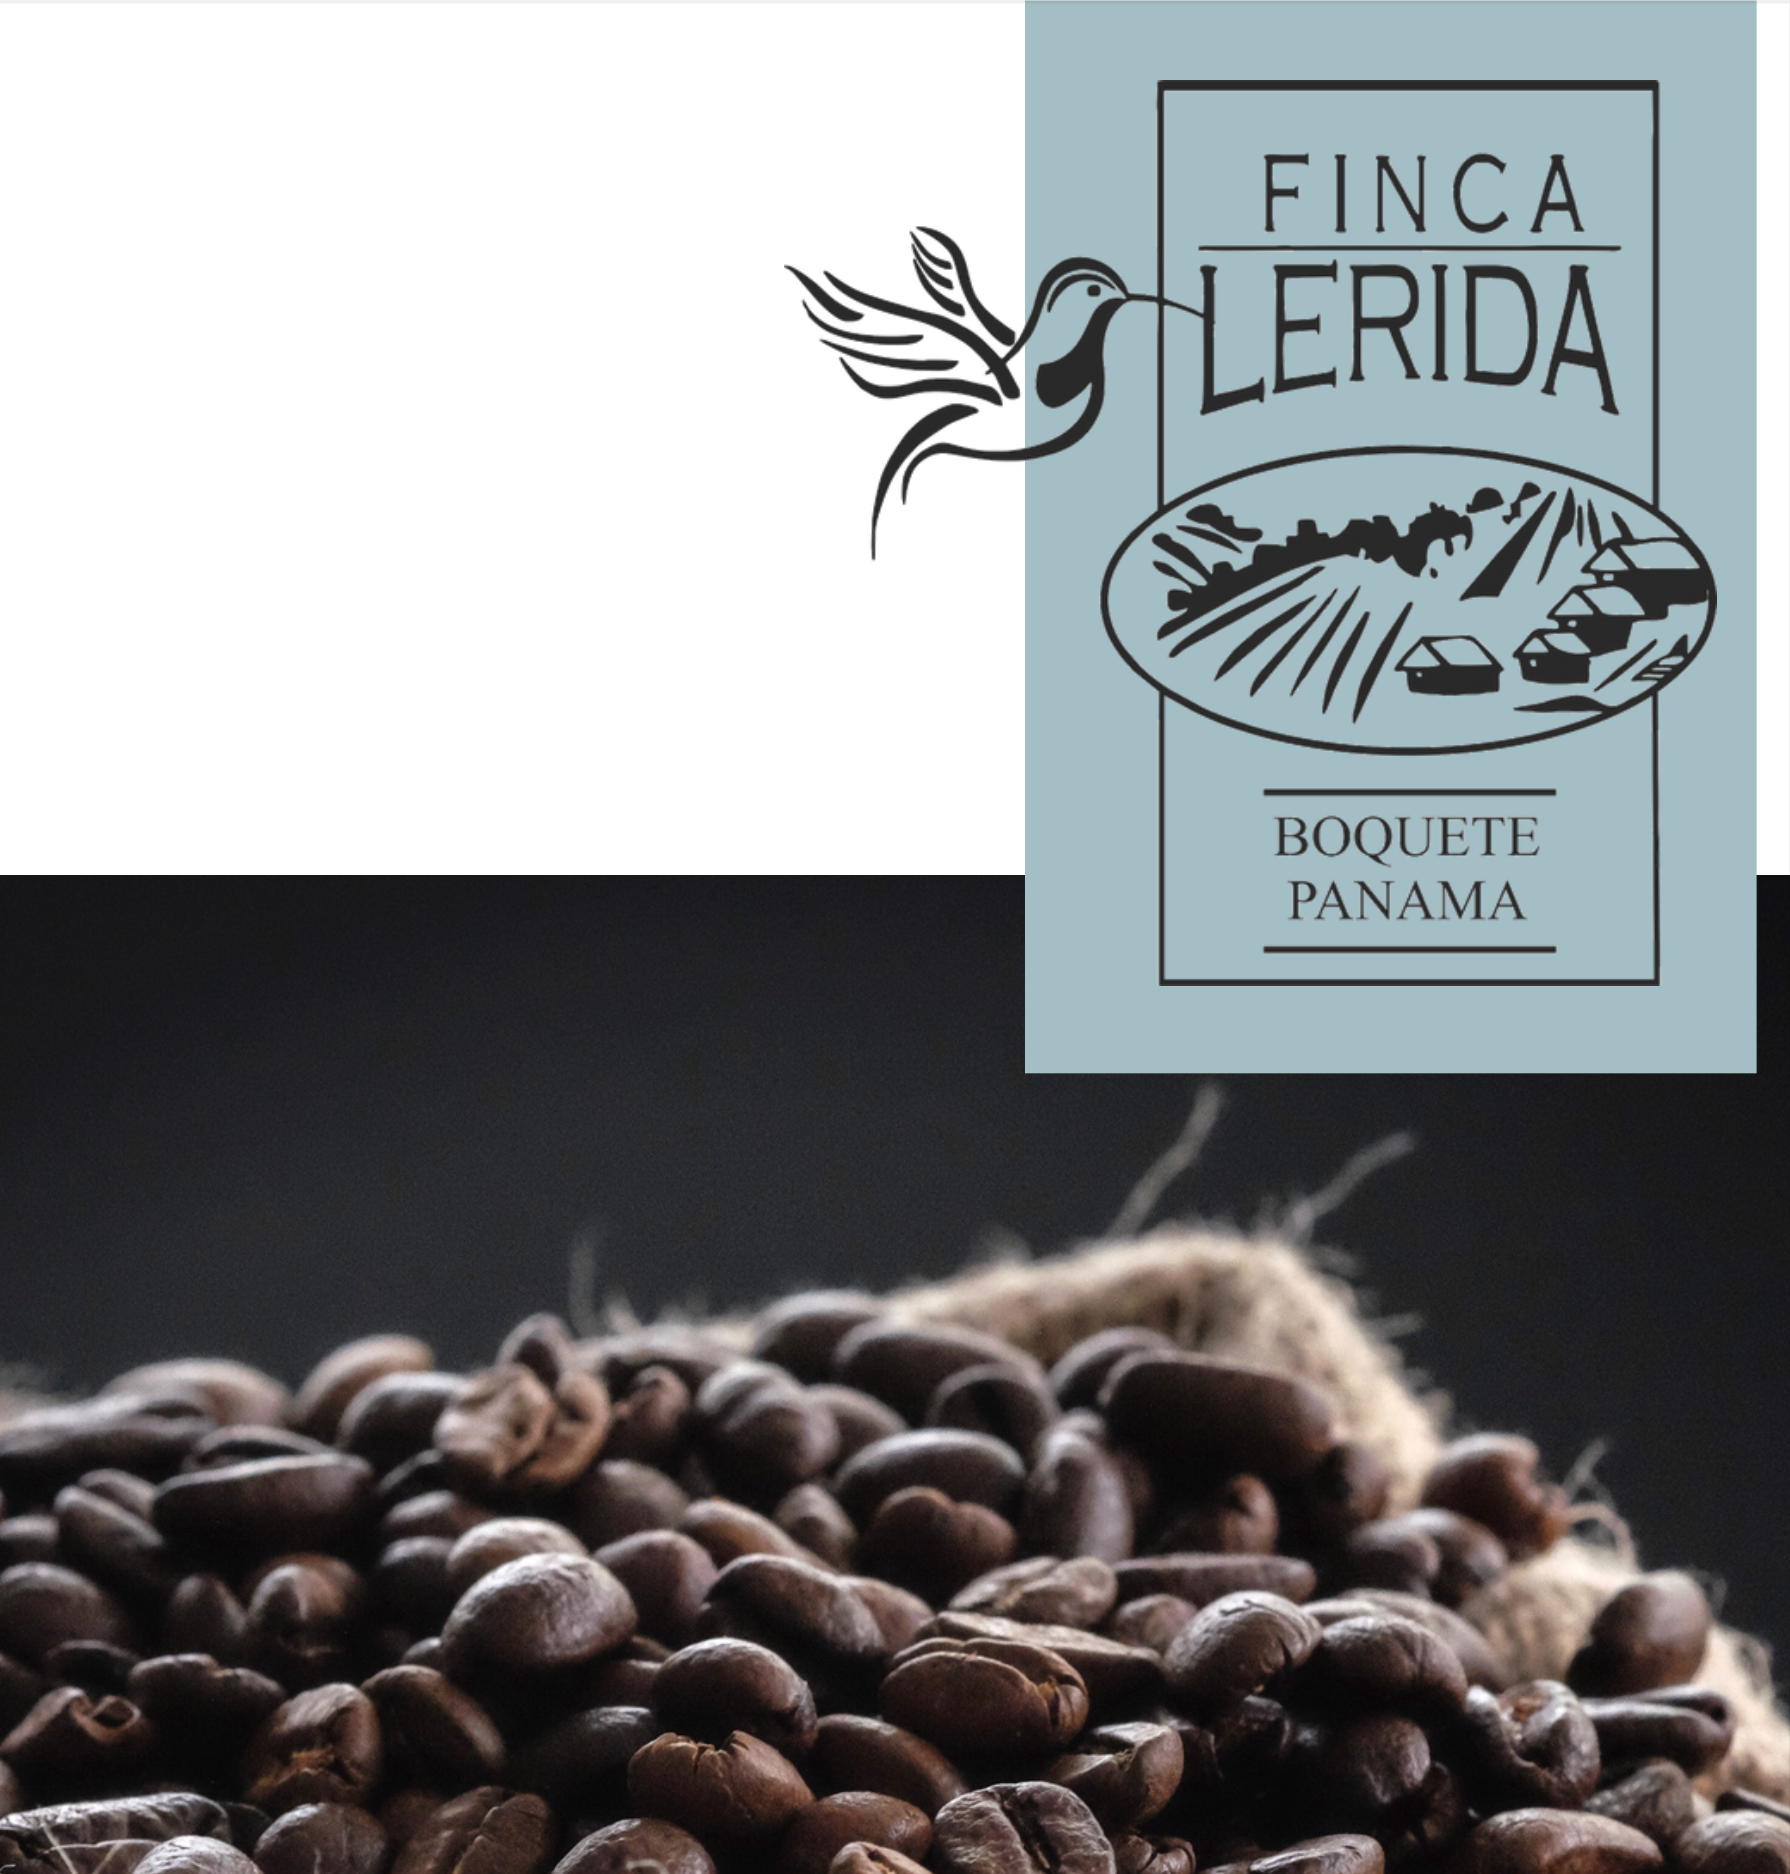 FINCA LERIDA COFFEE ESTATE